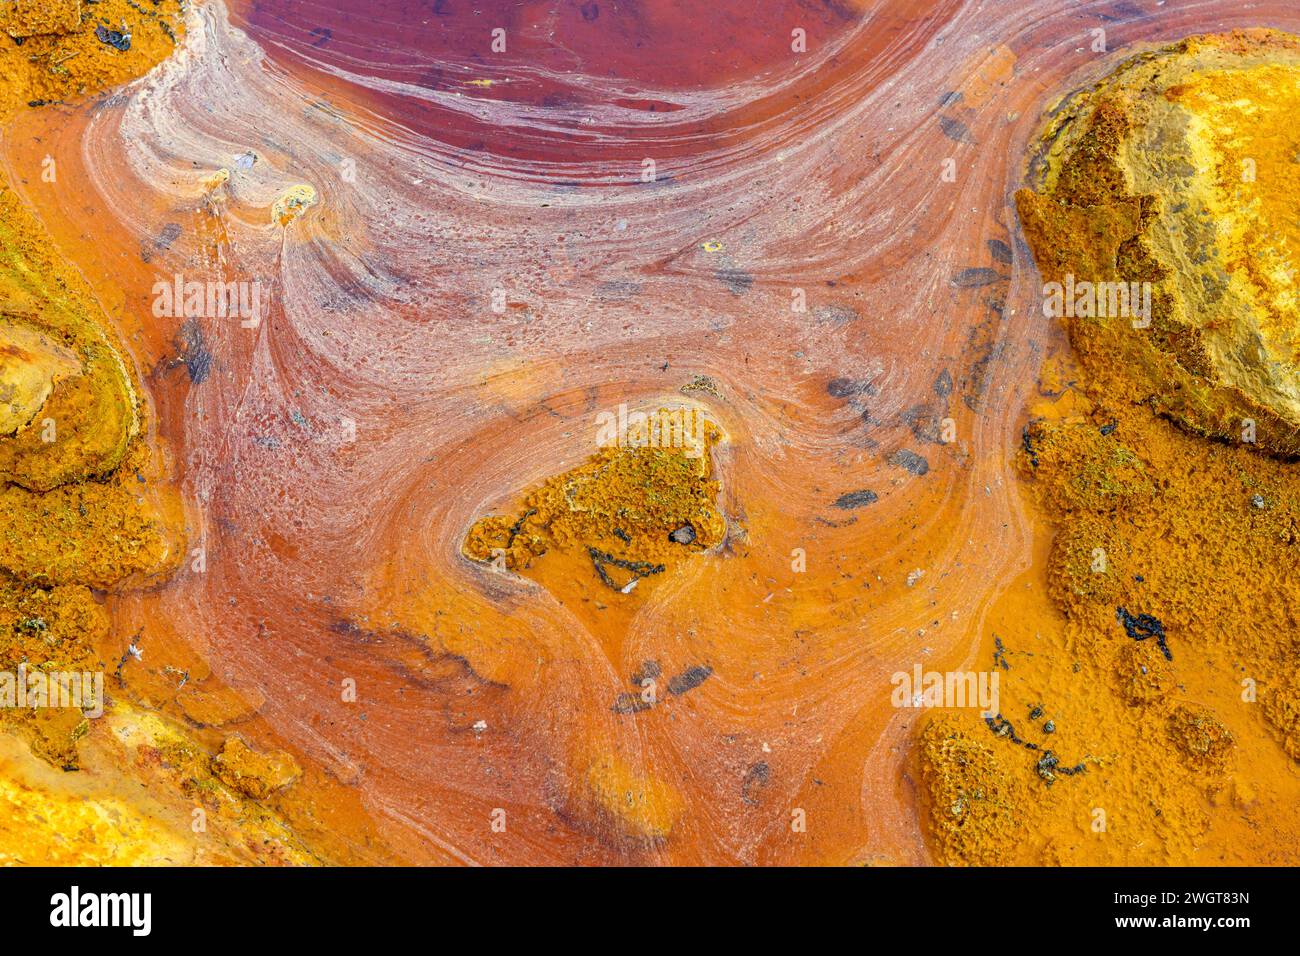 Des couches de terre frappantes et une strie vive d'eau rouge bordent le sol fissuré du Rio Tinto Banque D'Images